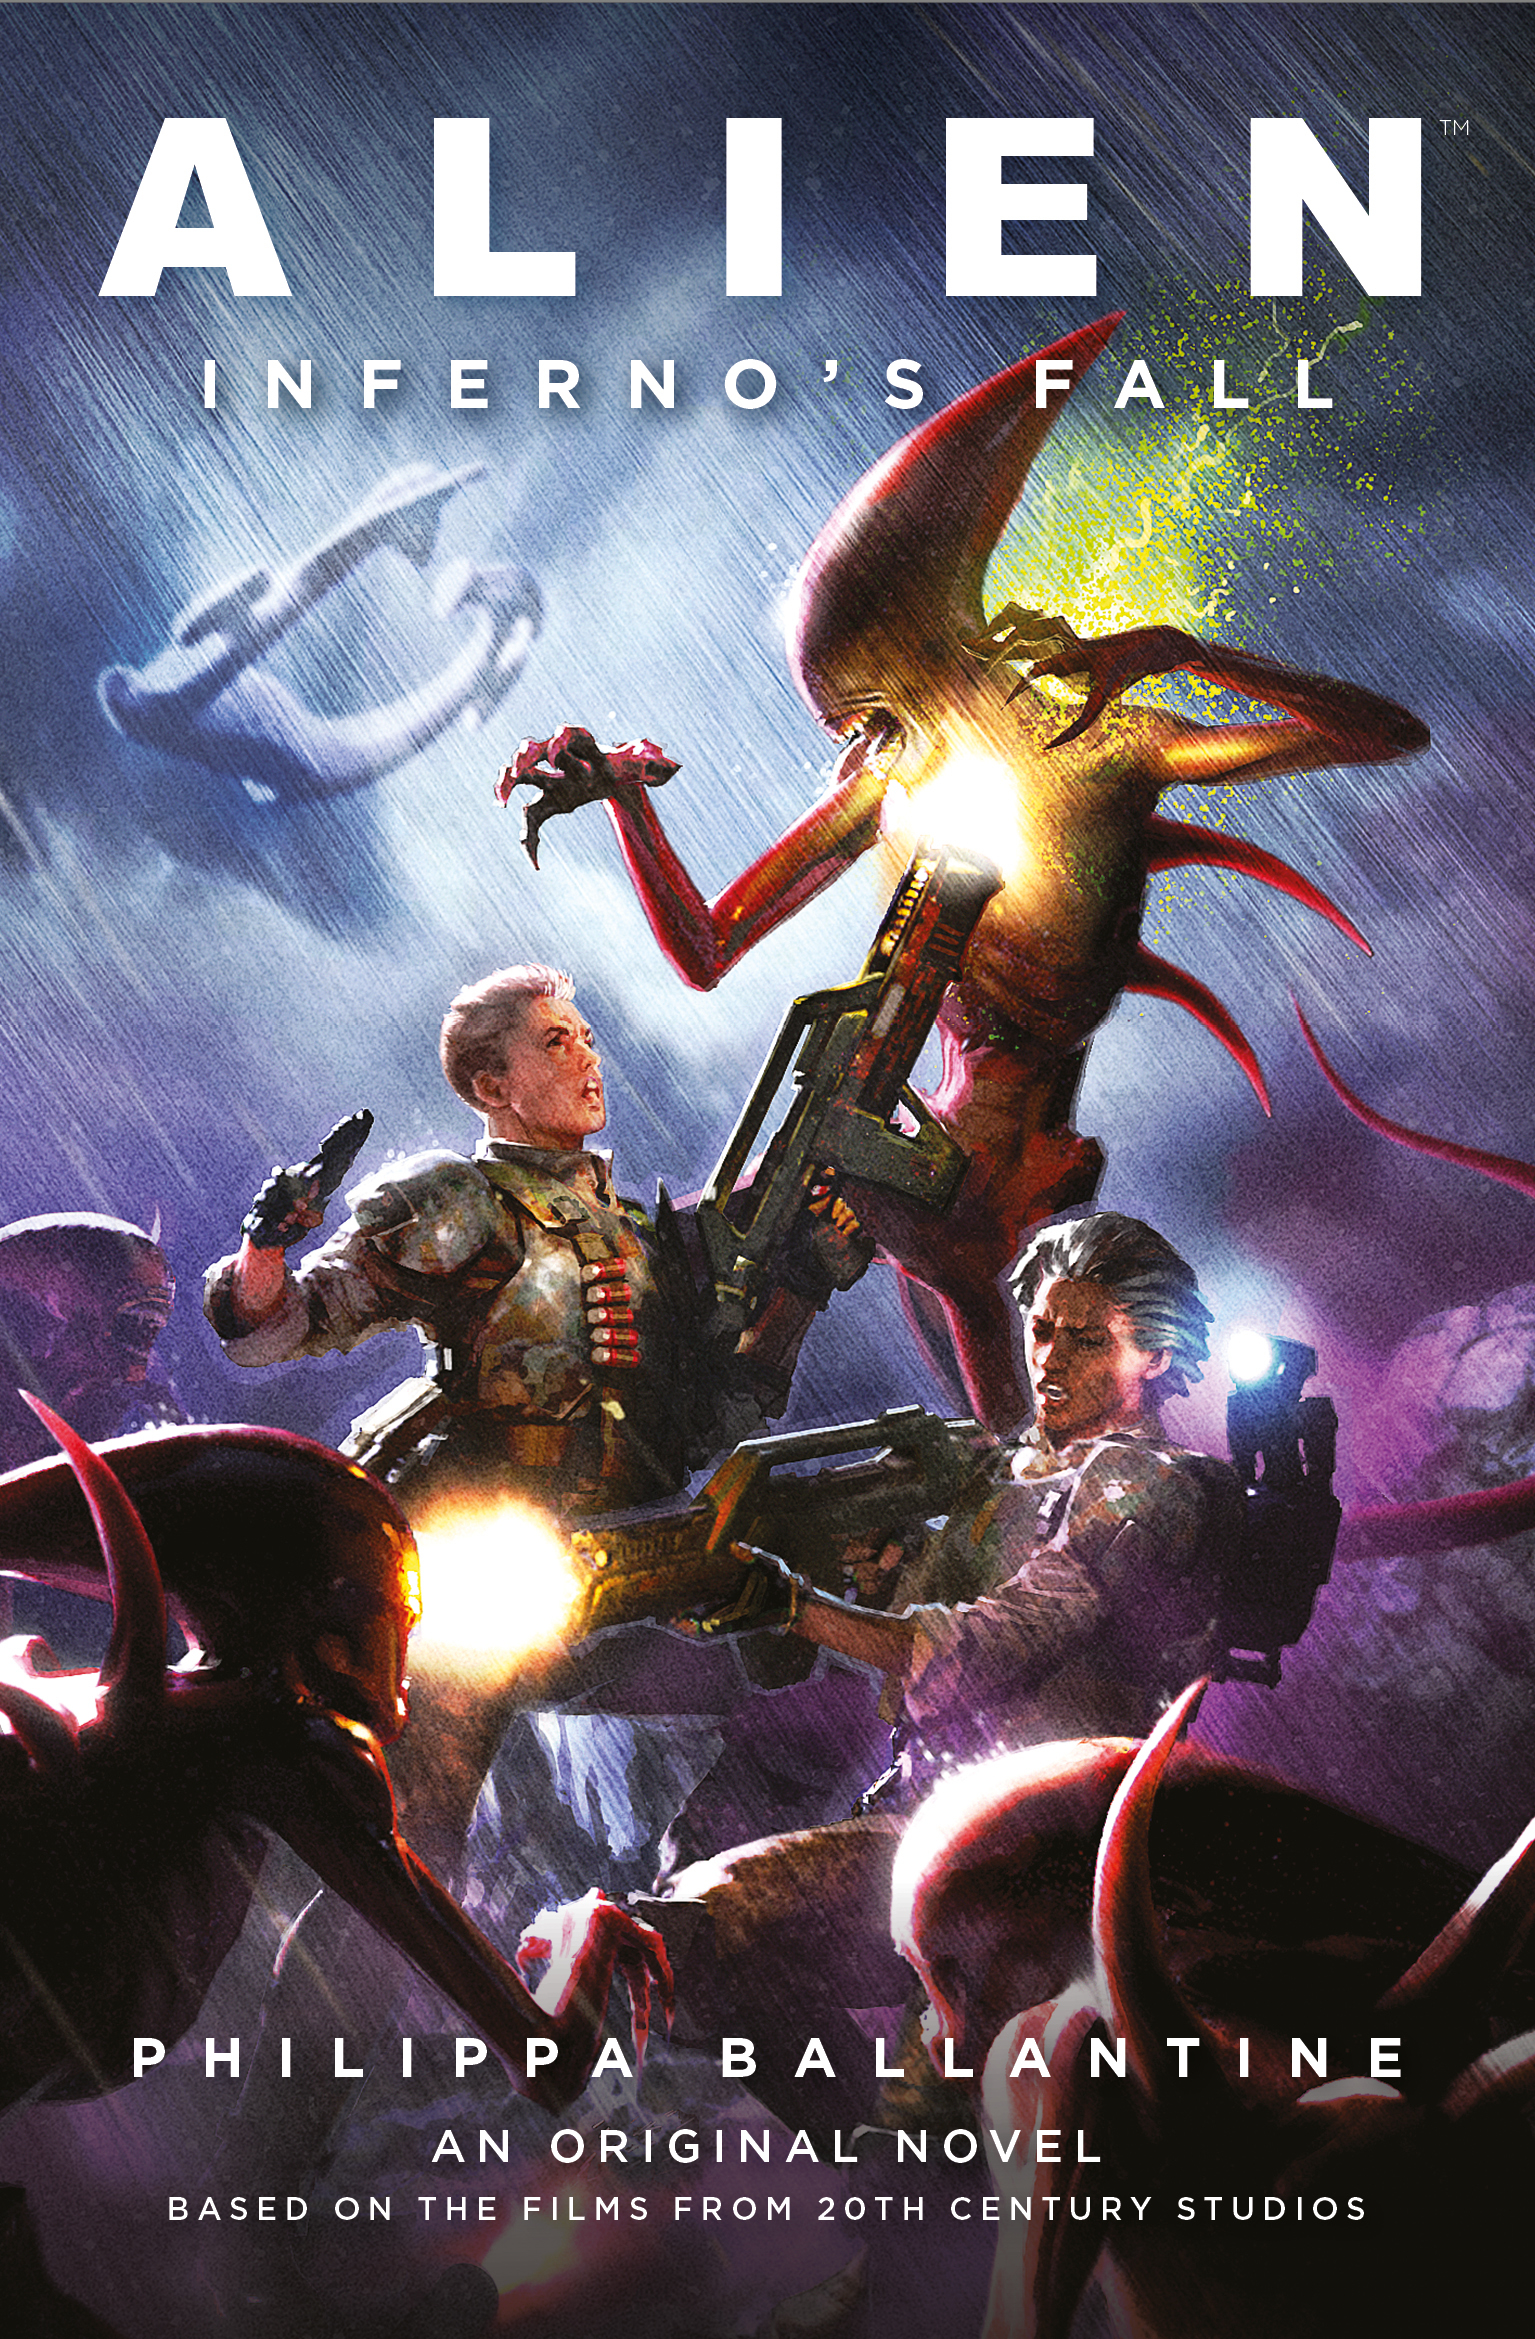 Alien Infernos Fall Soft Cover Novel